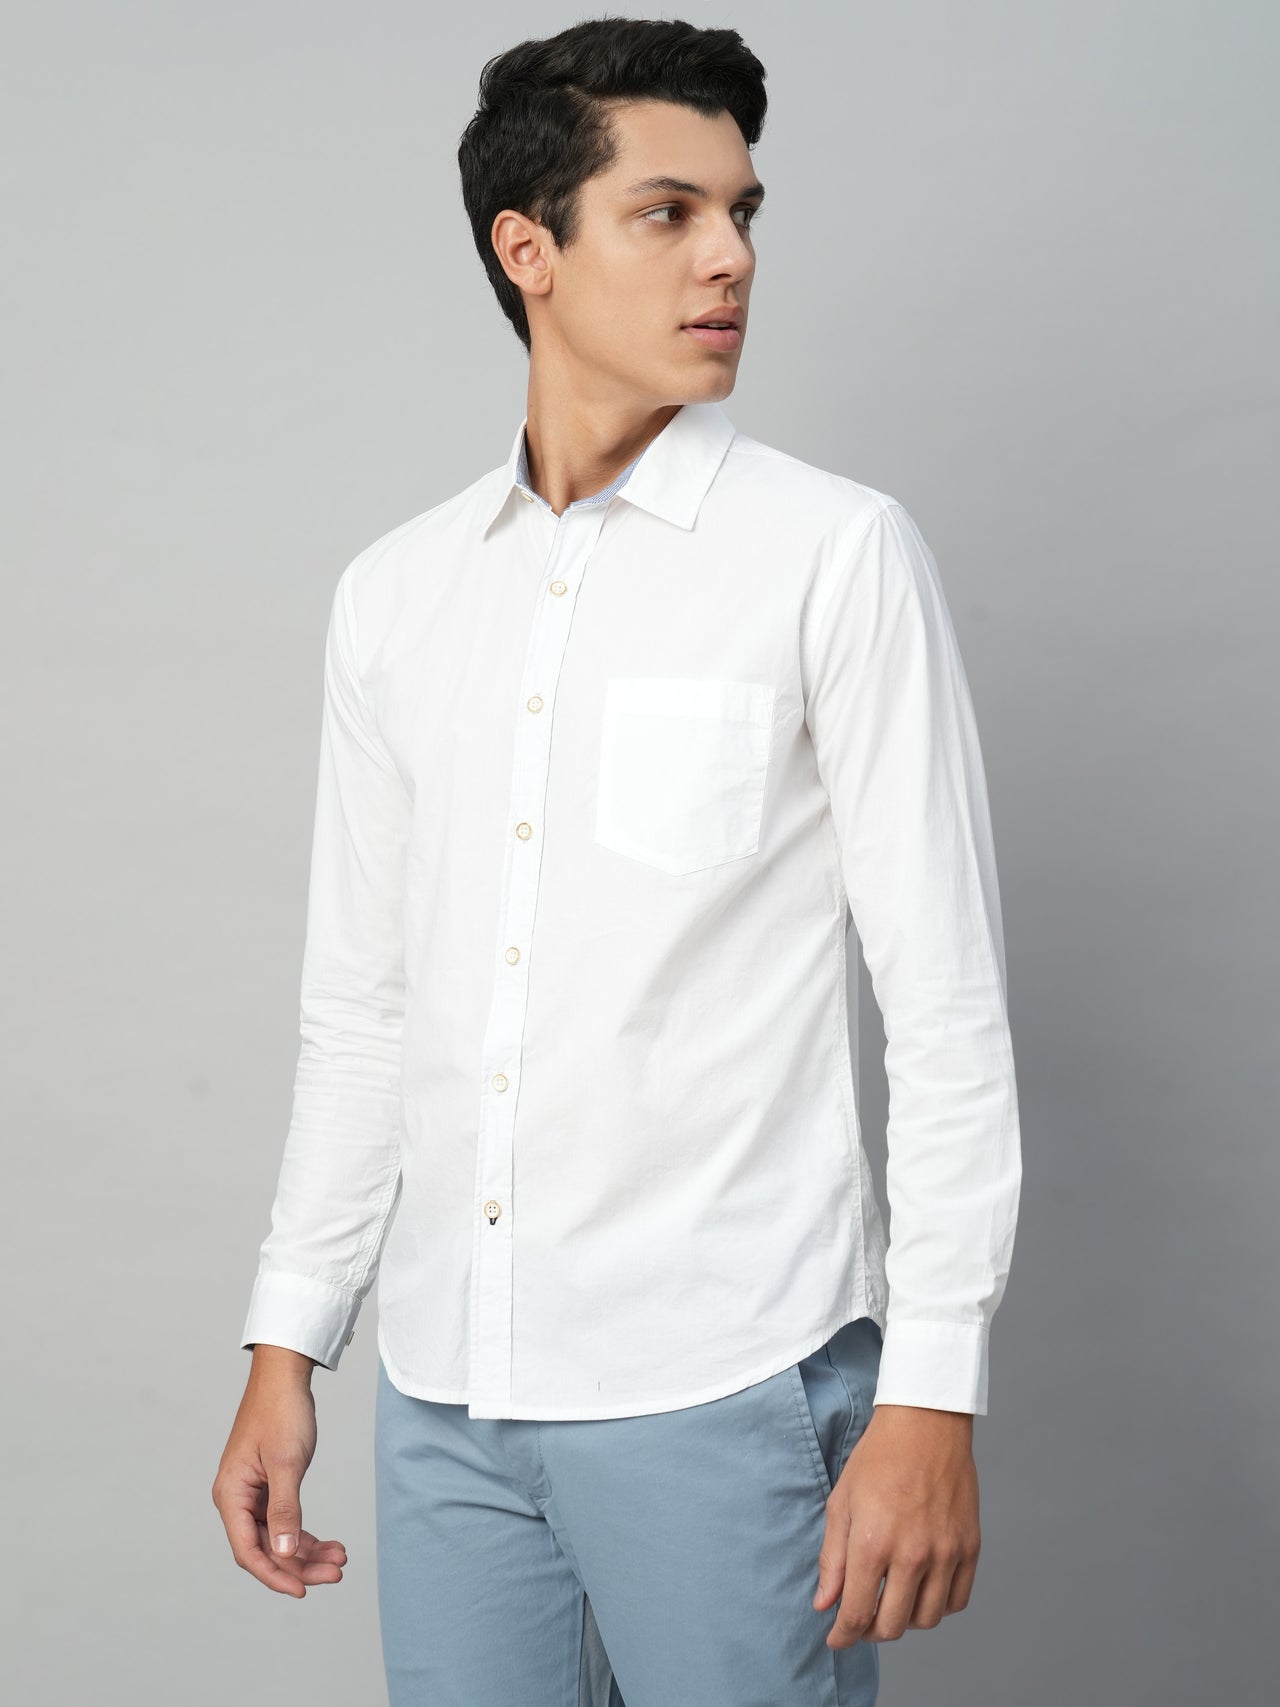 Men's Cotton White Regular Fit Shirts